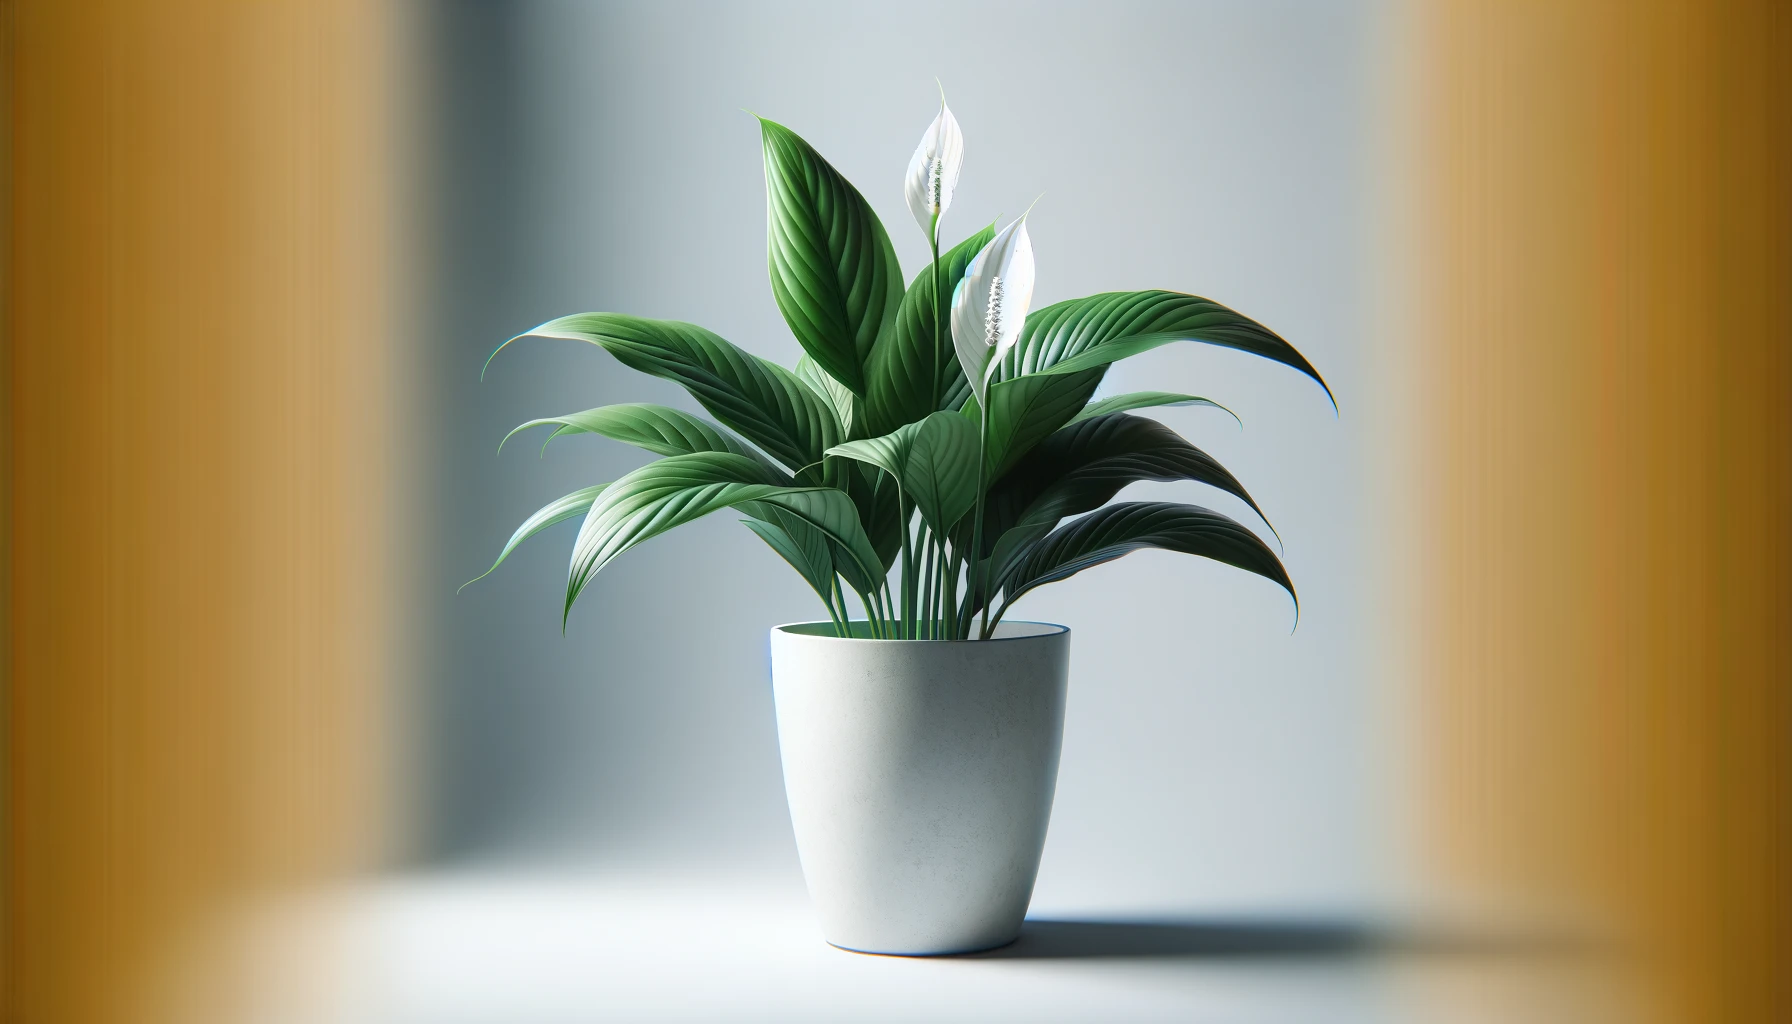 Skrzydłokwiat – roślina oczyszczająca powietrze w biurze i domu. Pielęgnacja i wymagania